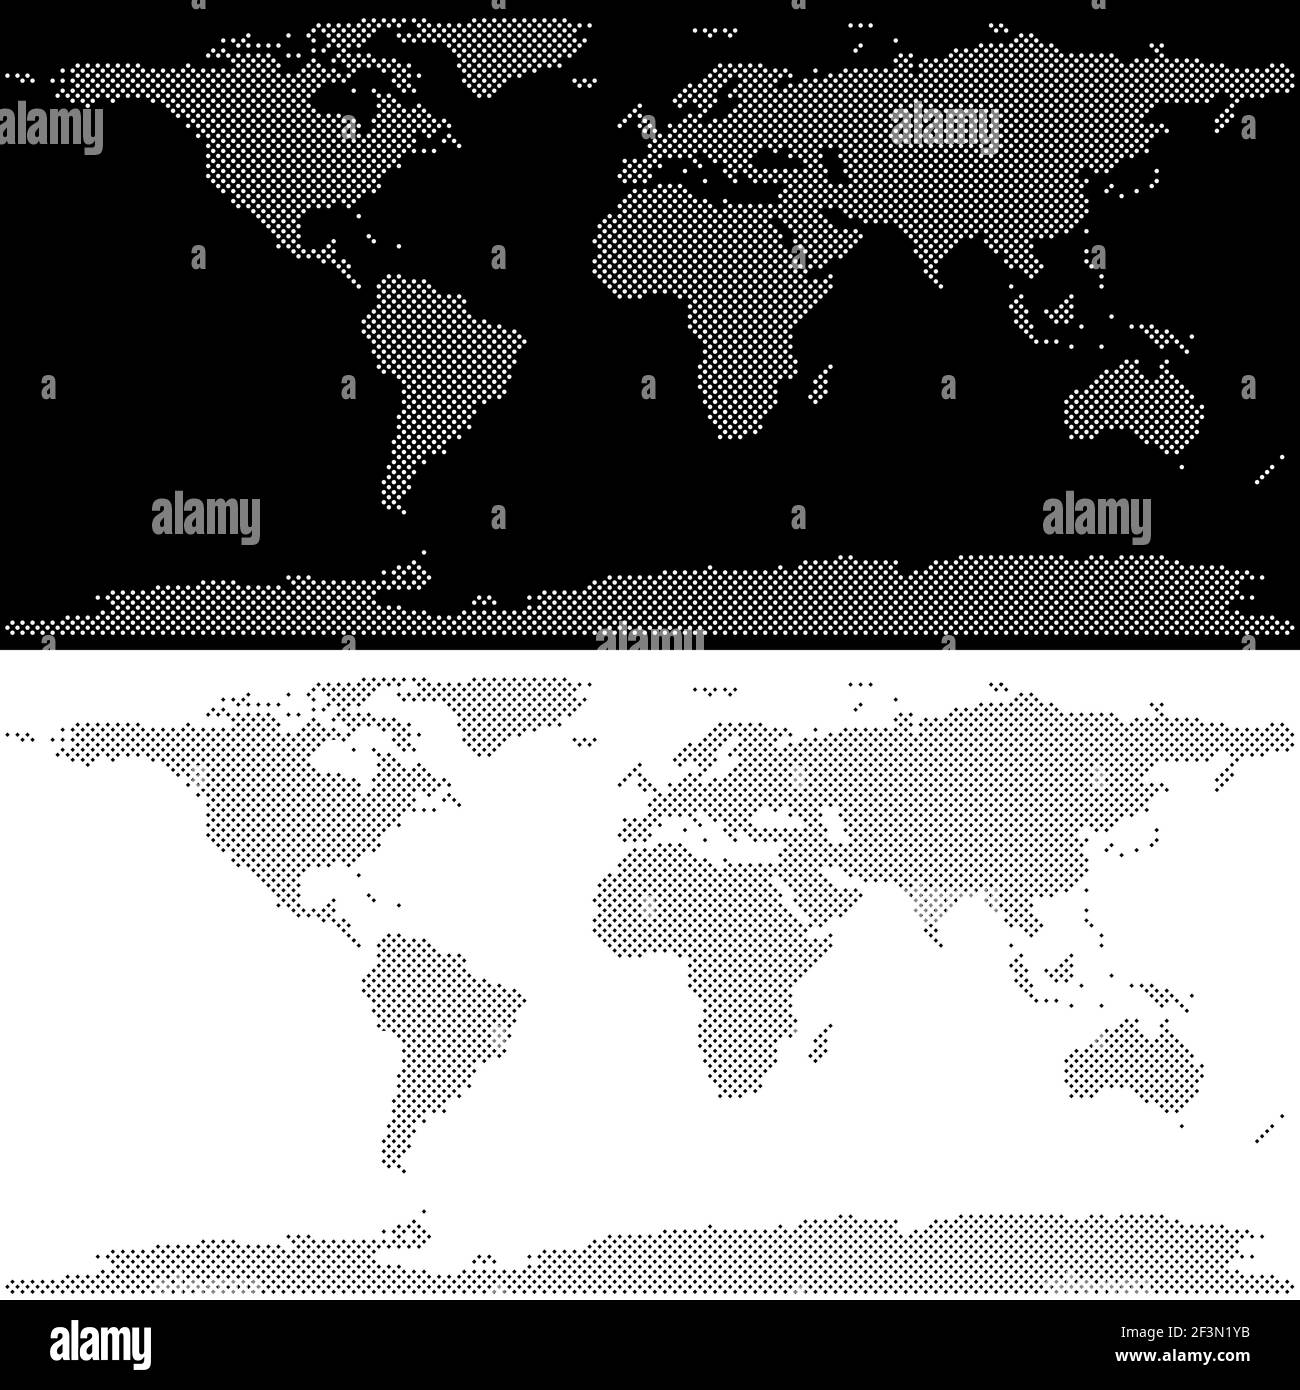 Disegno vettoriale della mappa del mondo, rappresentazione fatta con cerchi e quadrati, in bianco e nero Illustrazione Vettoriale